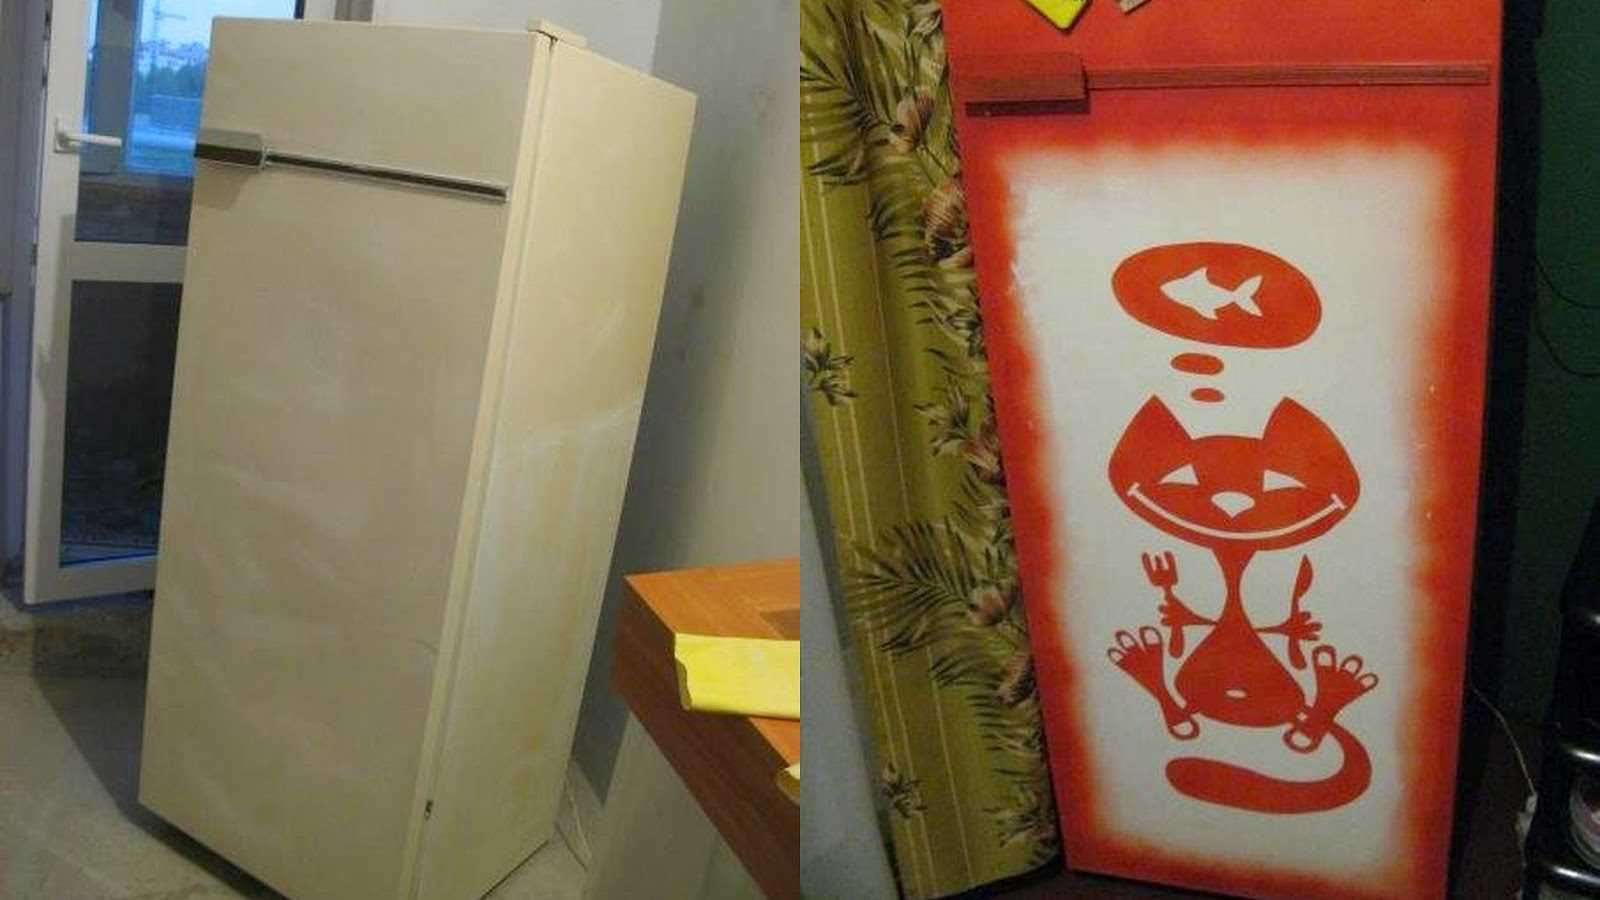 l'idée du design original du réfrigérateur